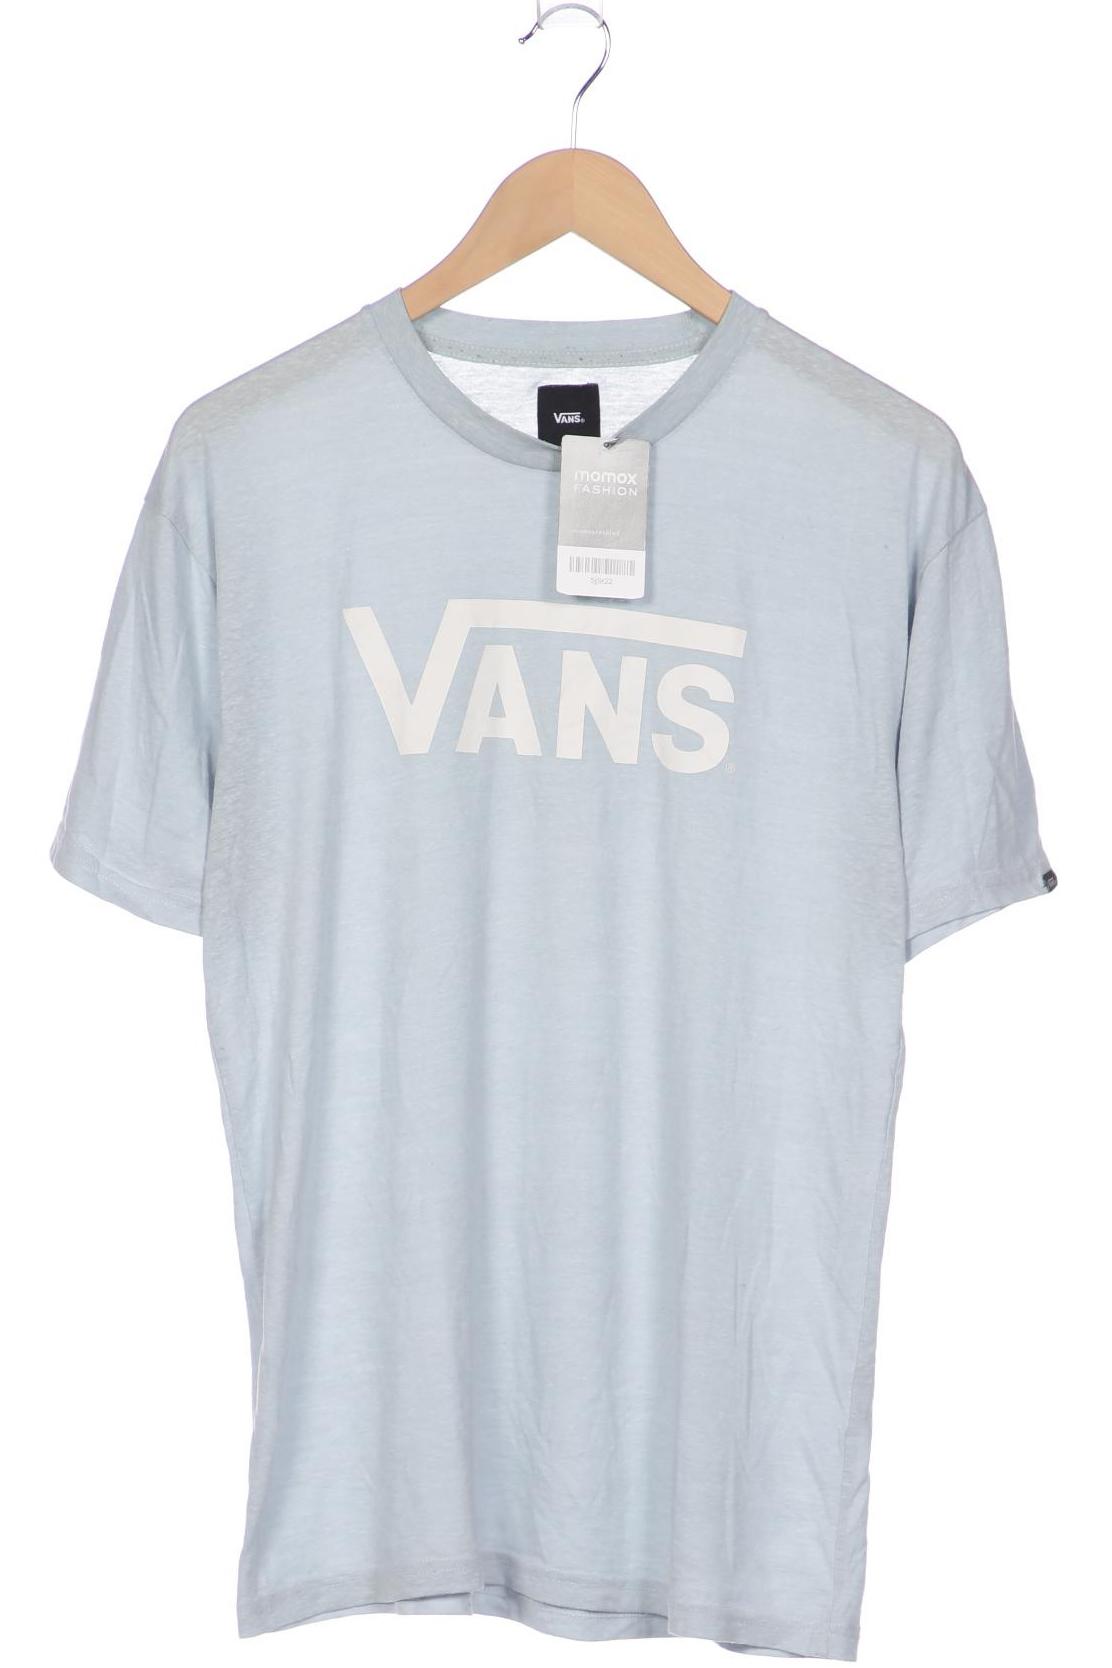 VANS Herren T-Shirt, hellblau von Vans